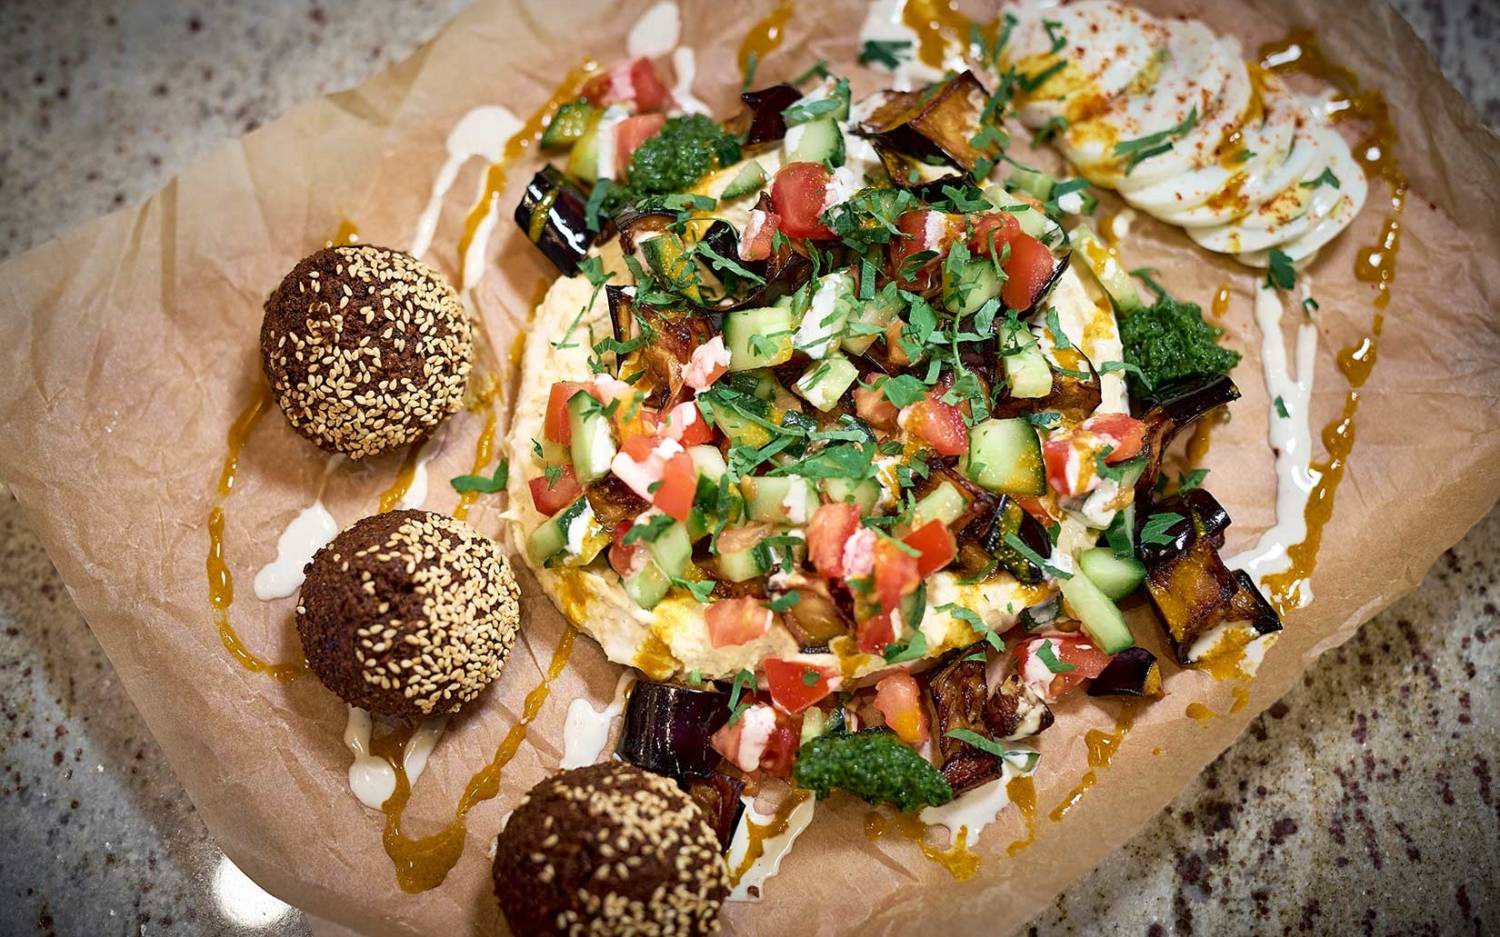 Orientalischer Salat mit Falafel und Dip / ©Marc Sill